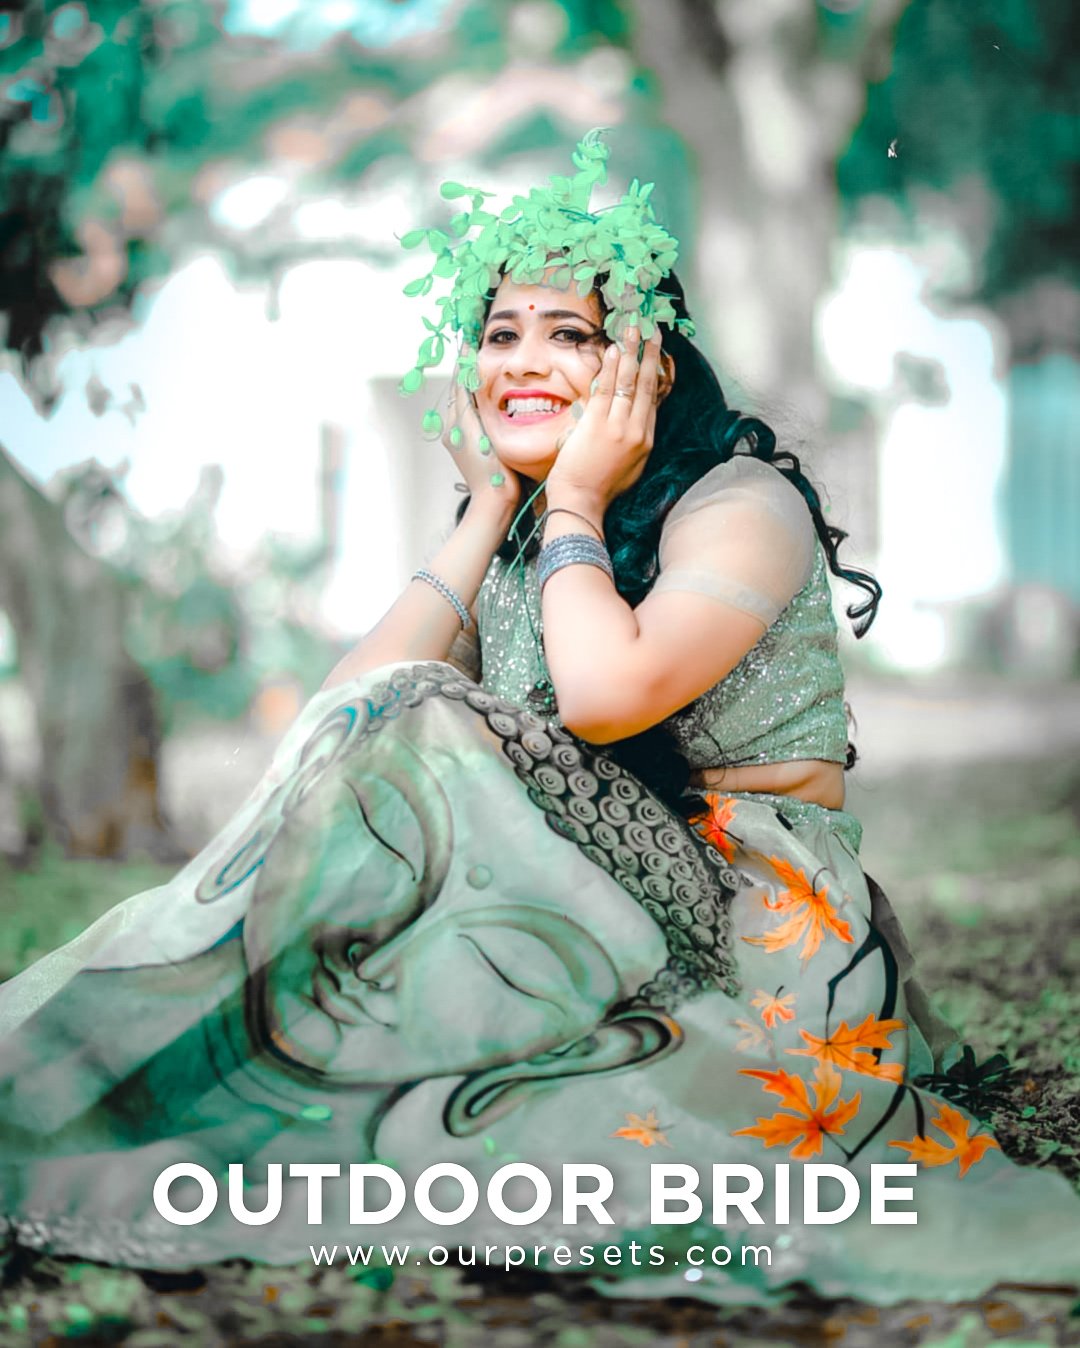 Outdoor bride preset